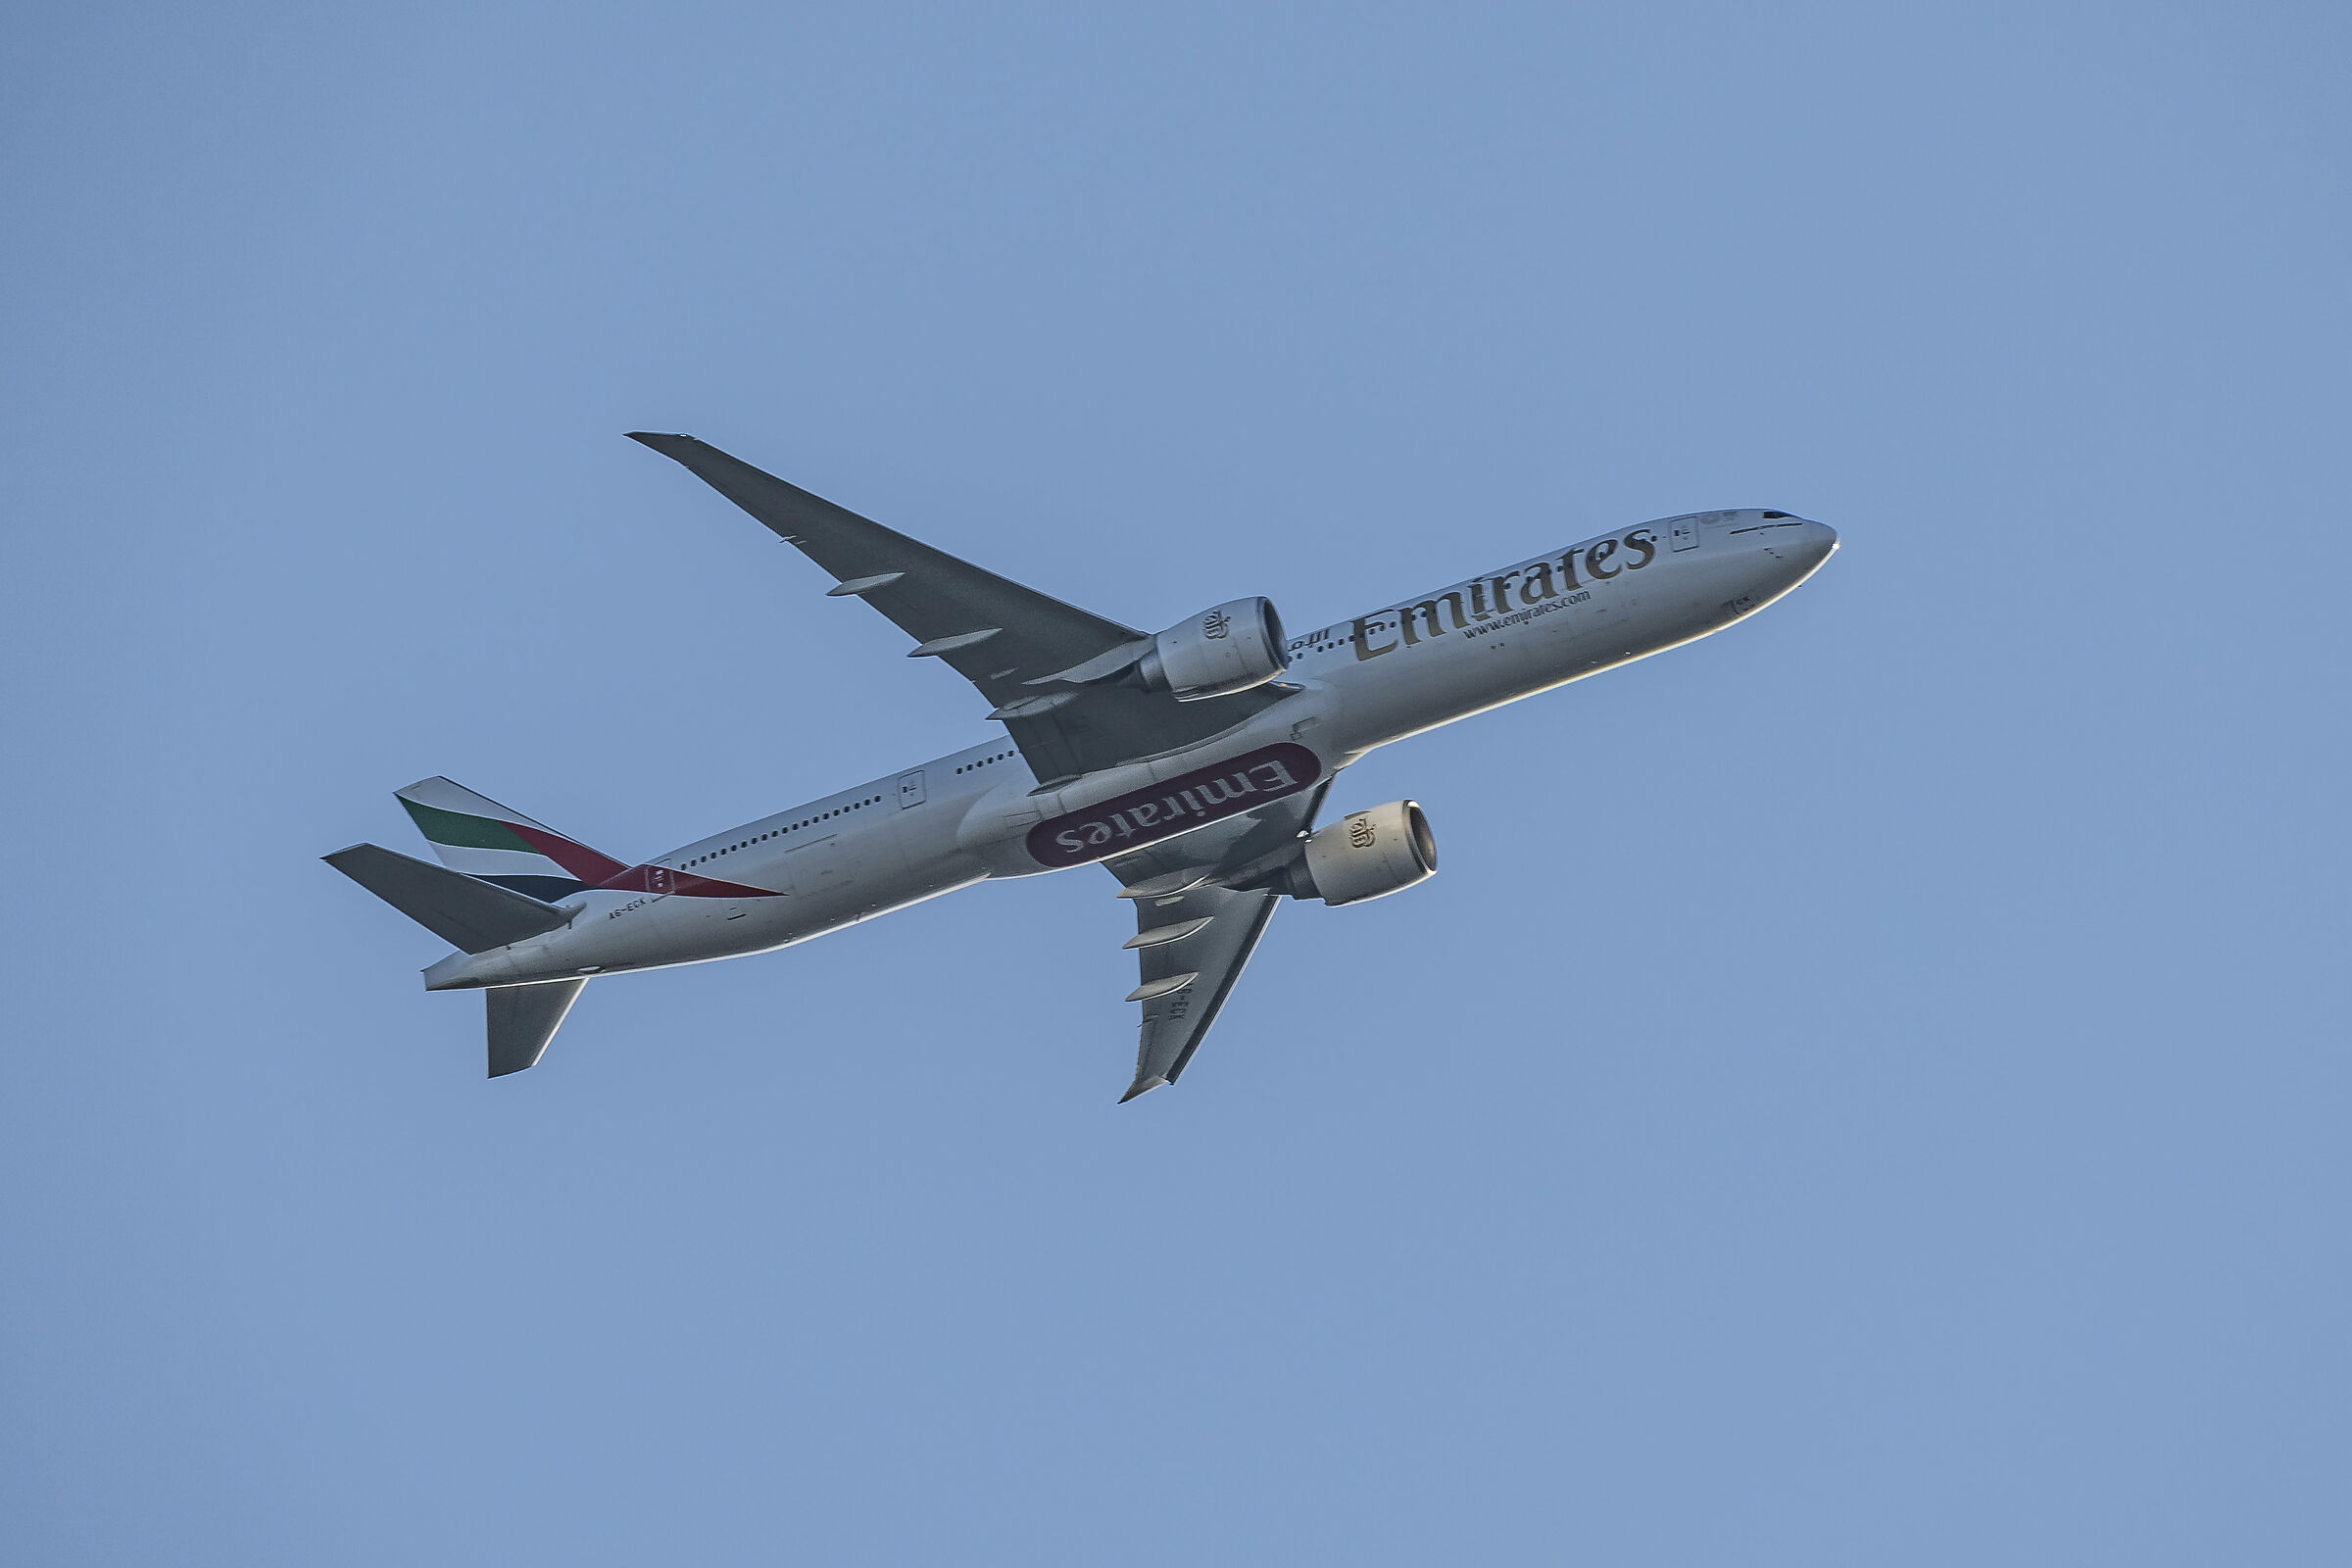 Boeing 777-300er - Emirates a6-eck...